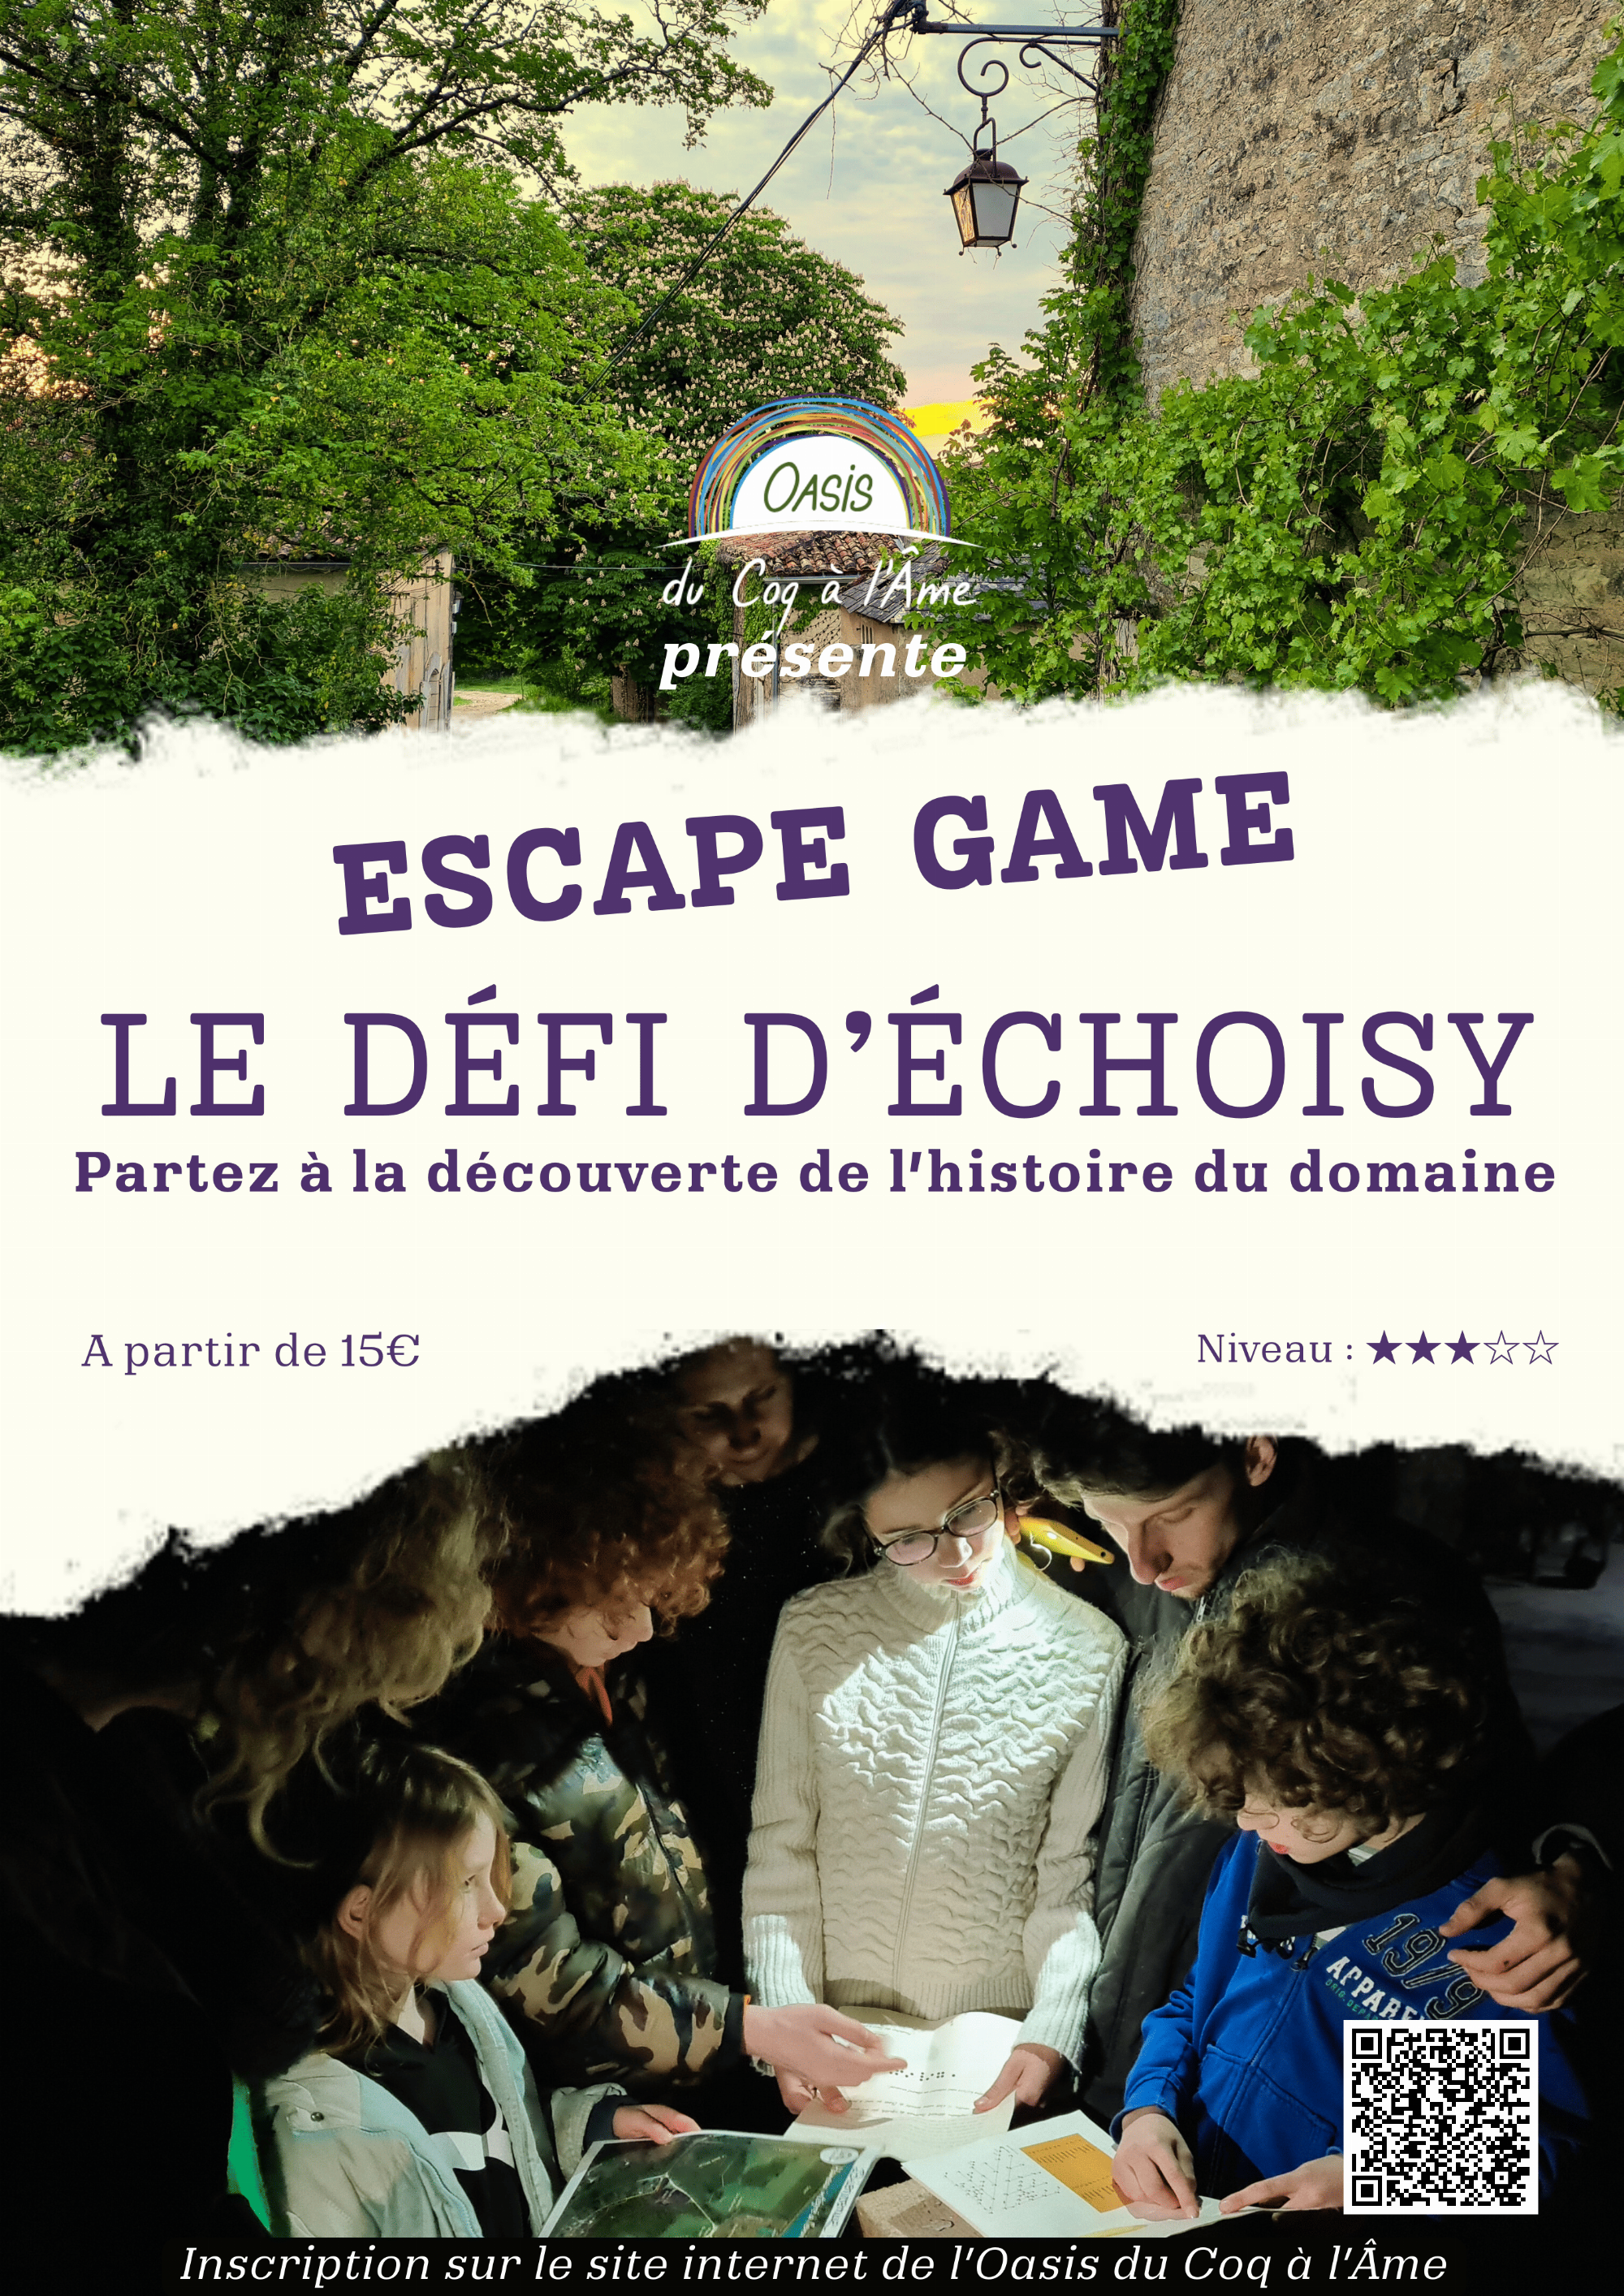 Le Défi d'Echoisy : Escape Game en plein air